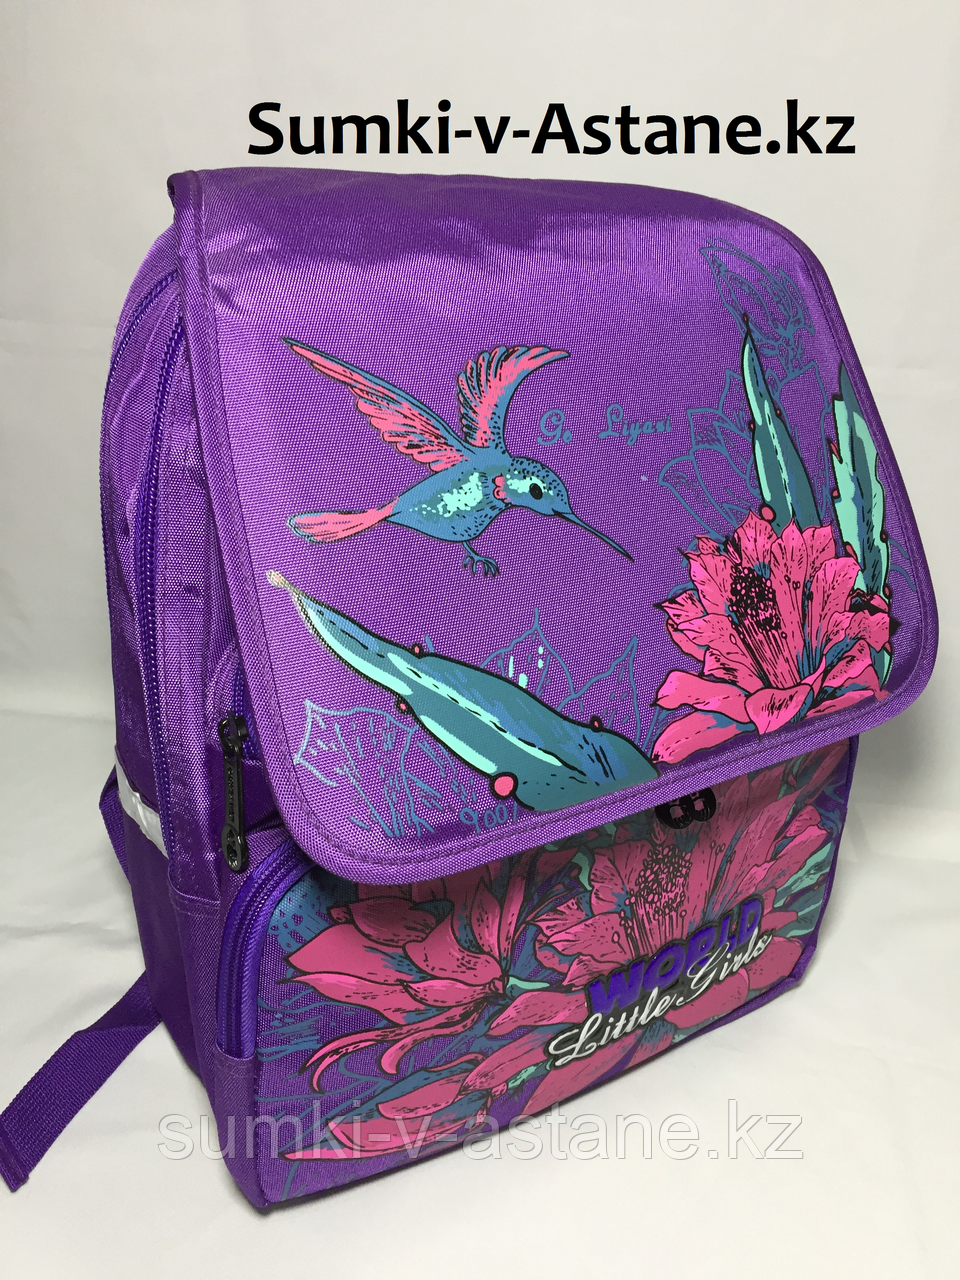 Школьный рюкзак для девочек в 1-й класс (высота 35 см, ширина 27 см, глубина 15 см)